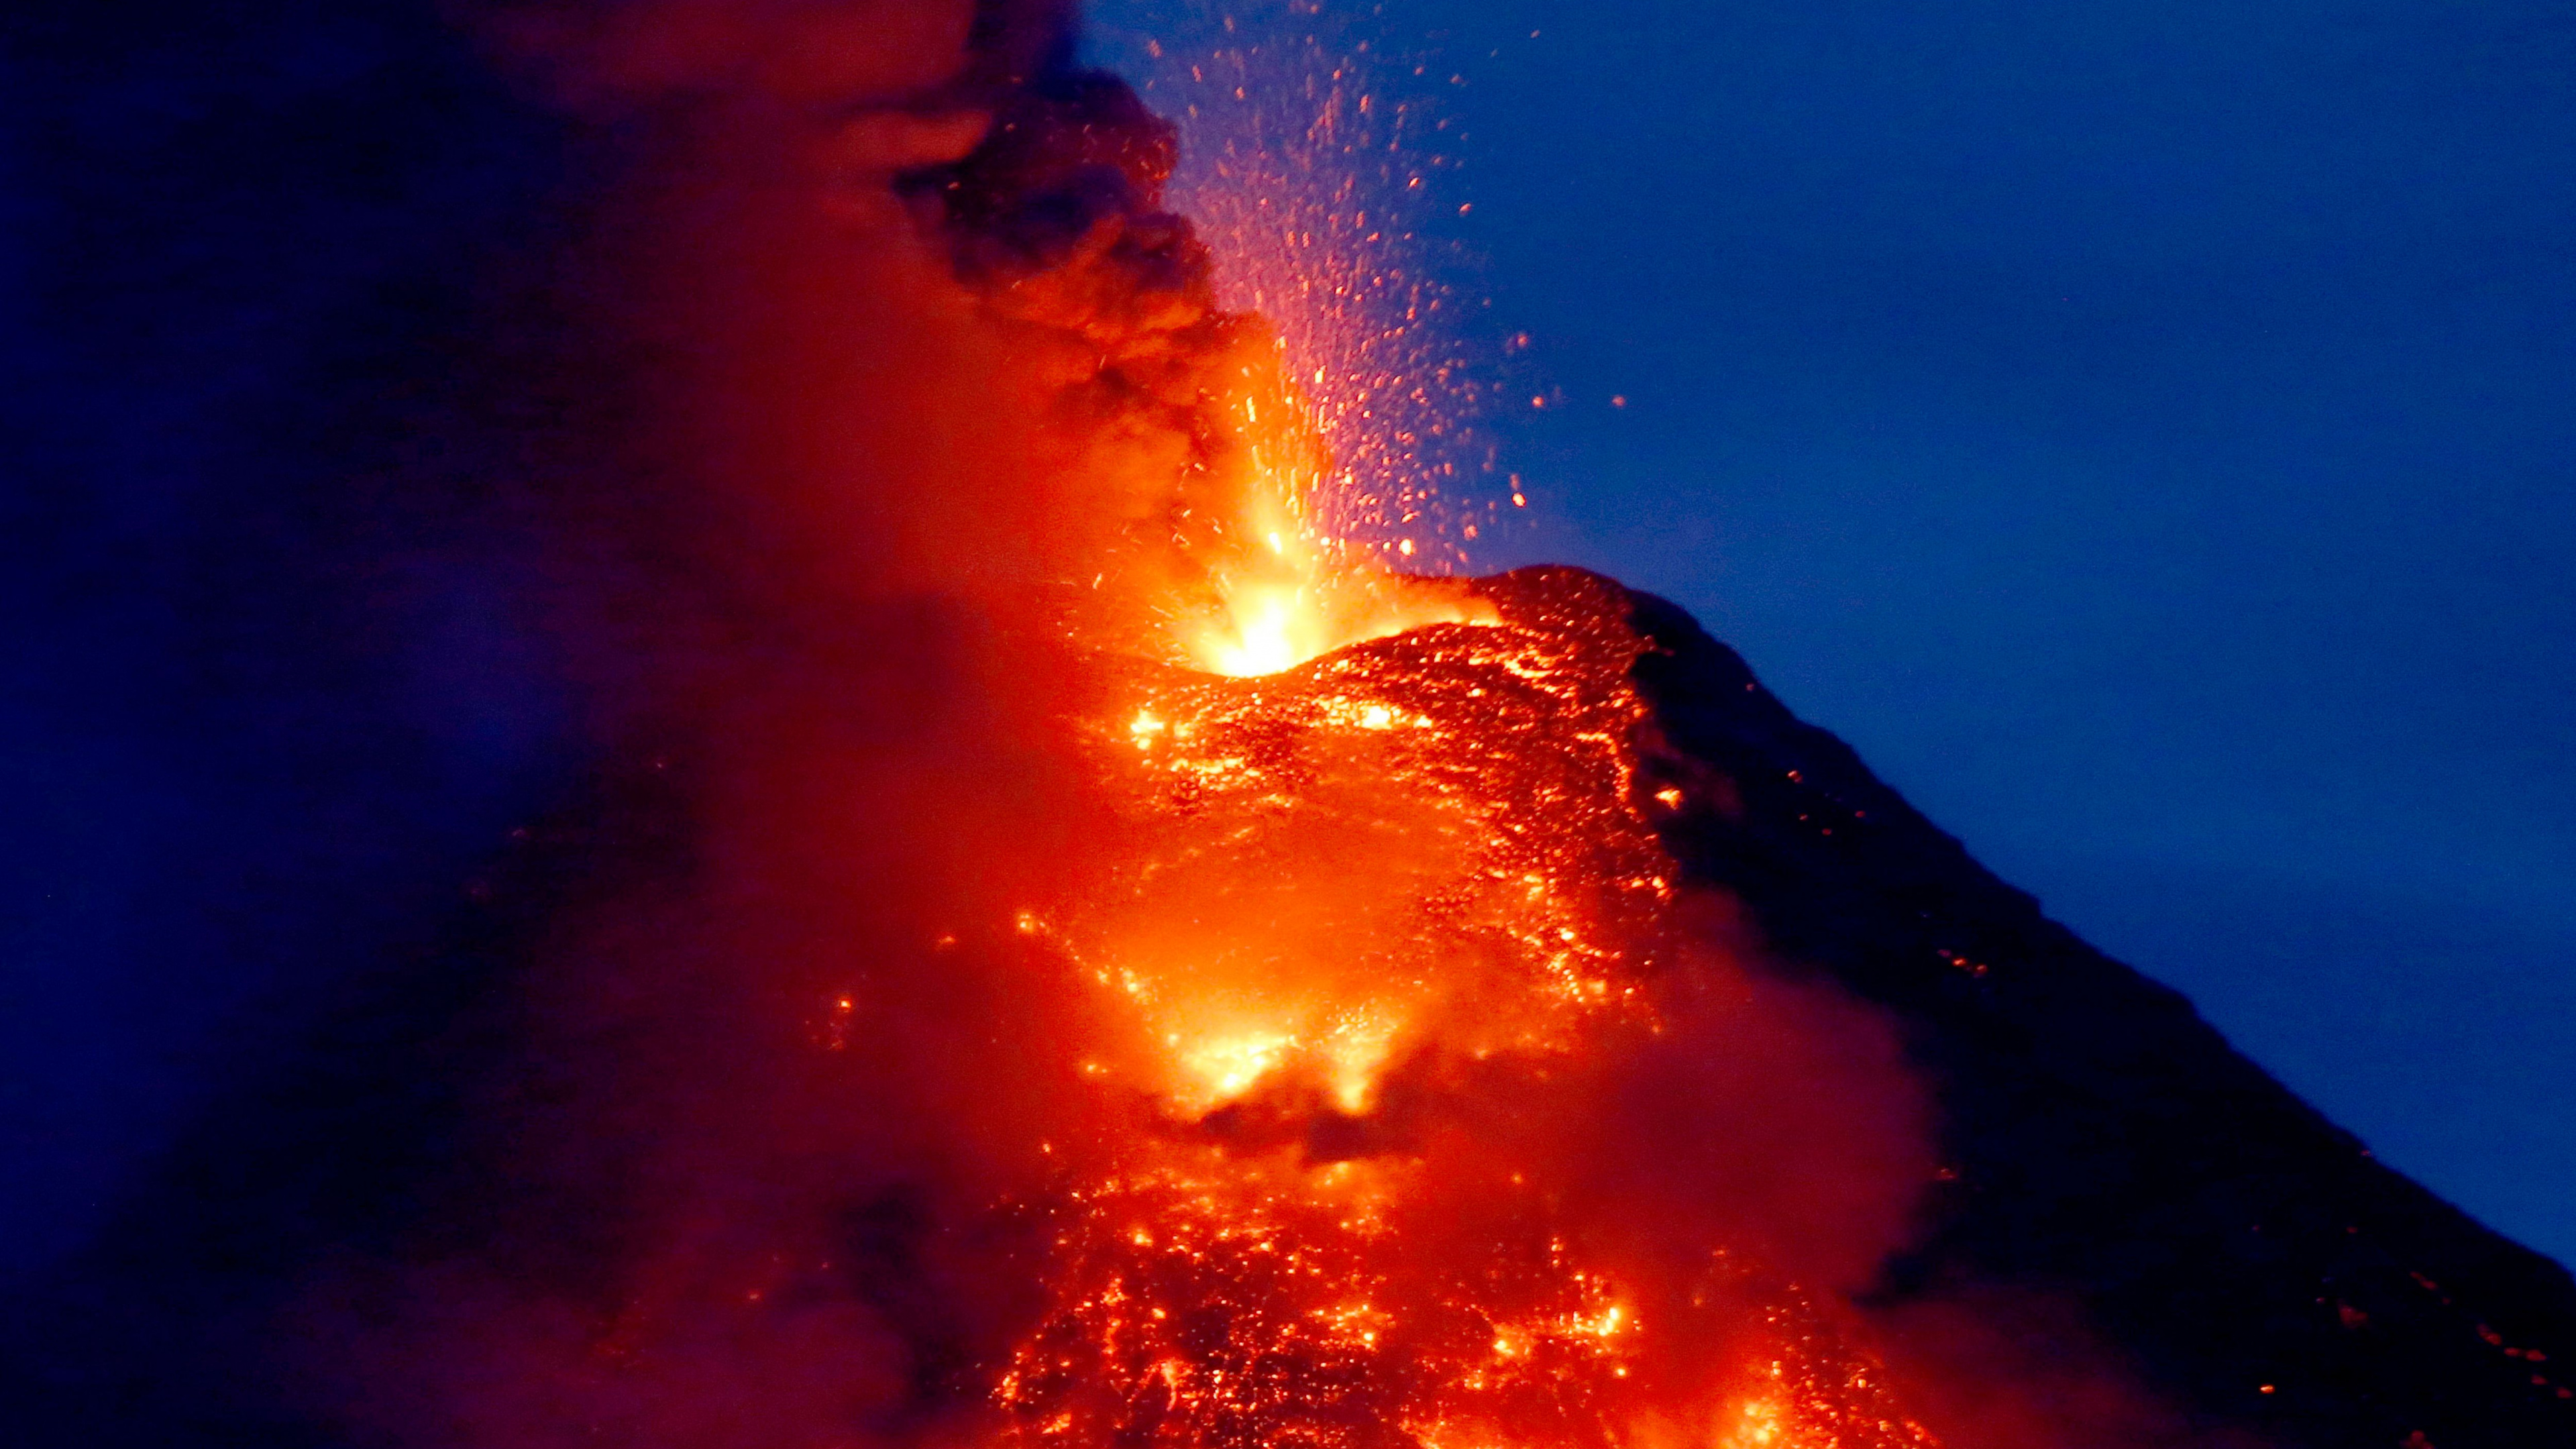 火山的地貌, 类型的火山爆发, 熔岩, 熔岩圆顶, 屏蔽火山 壁纸 3840x2160 允许